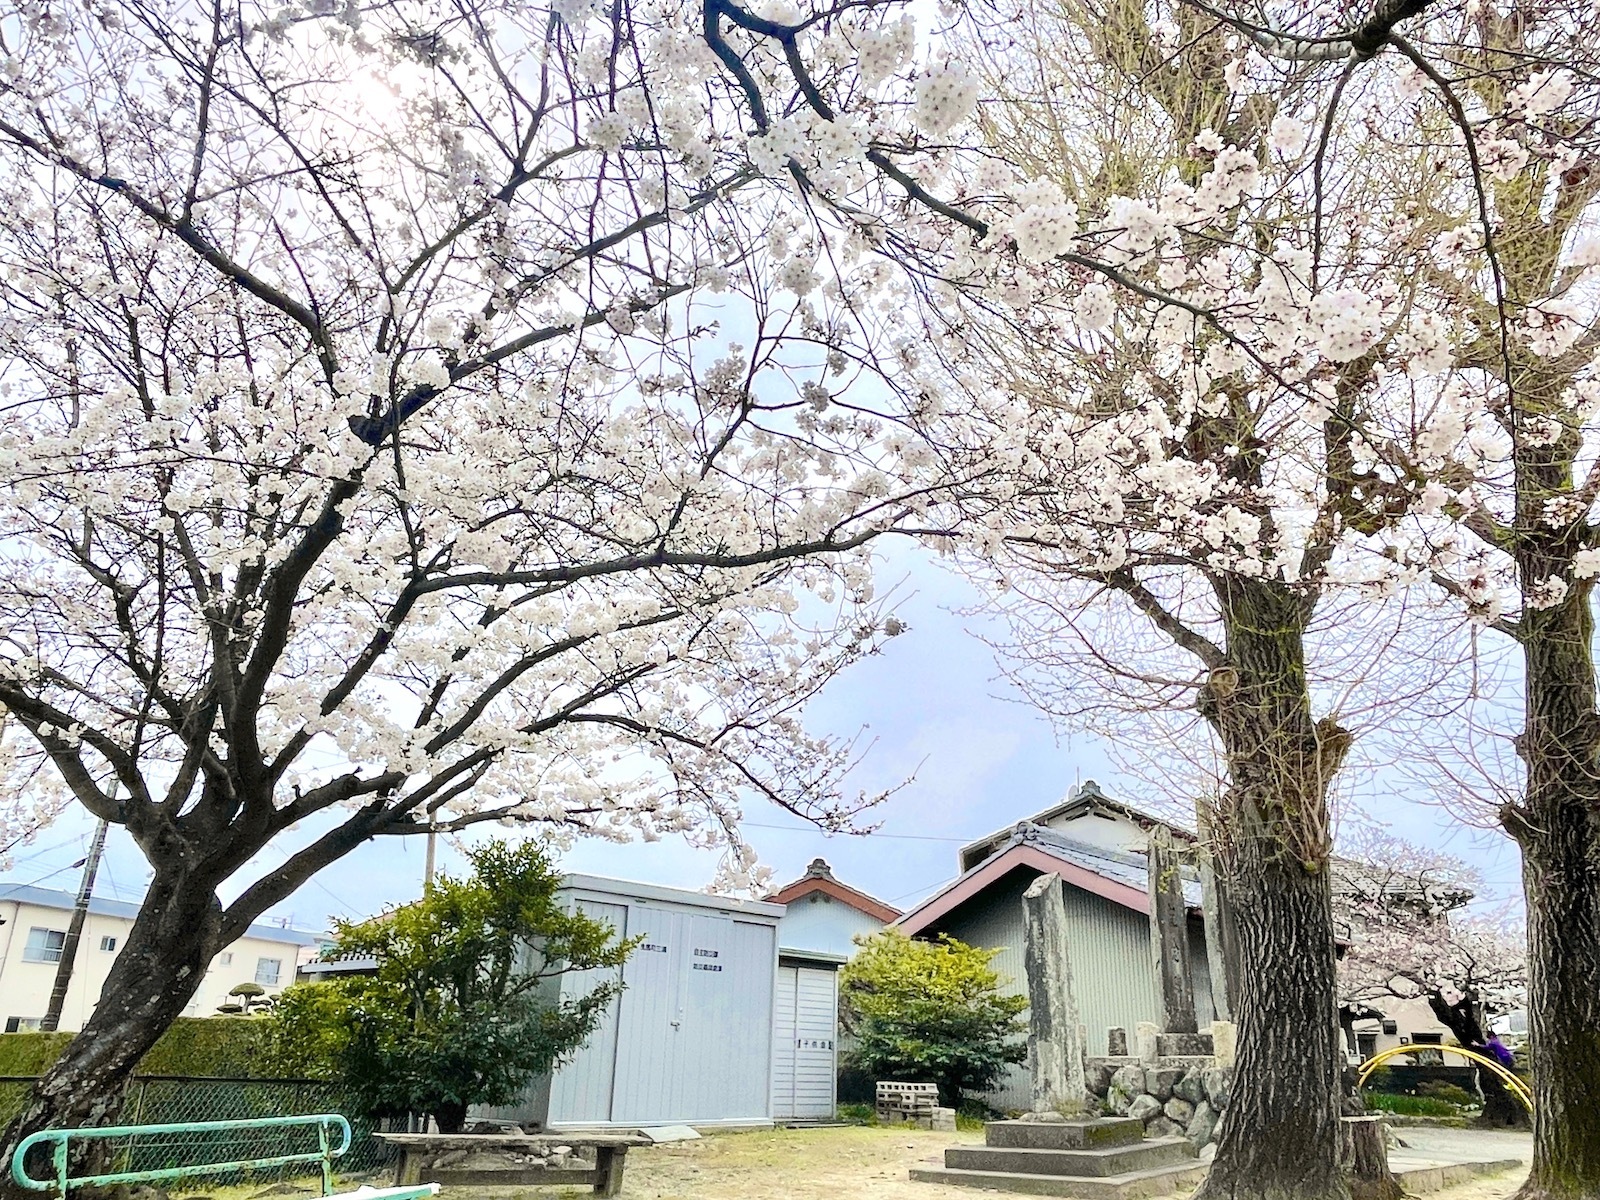 桜の木々